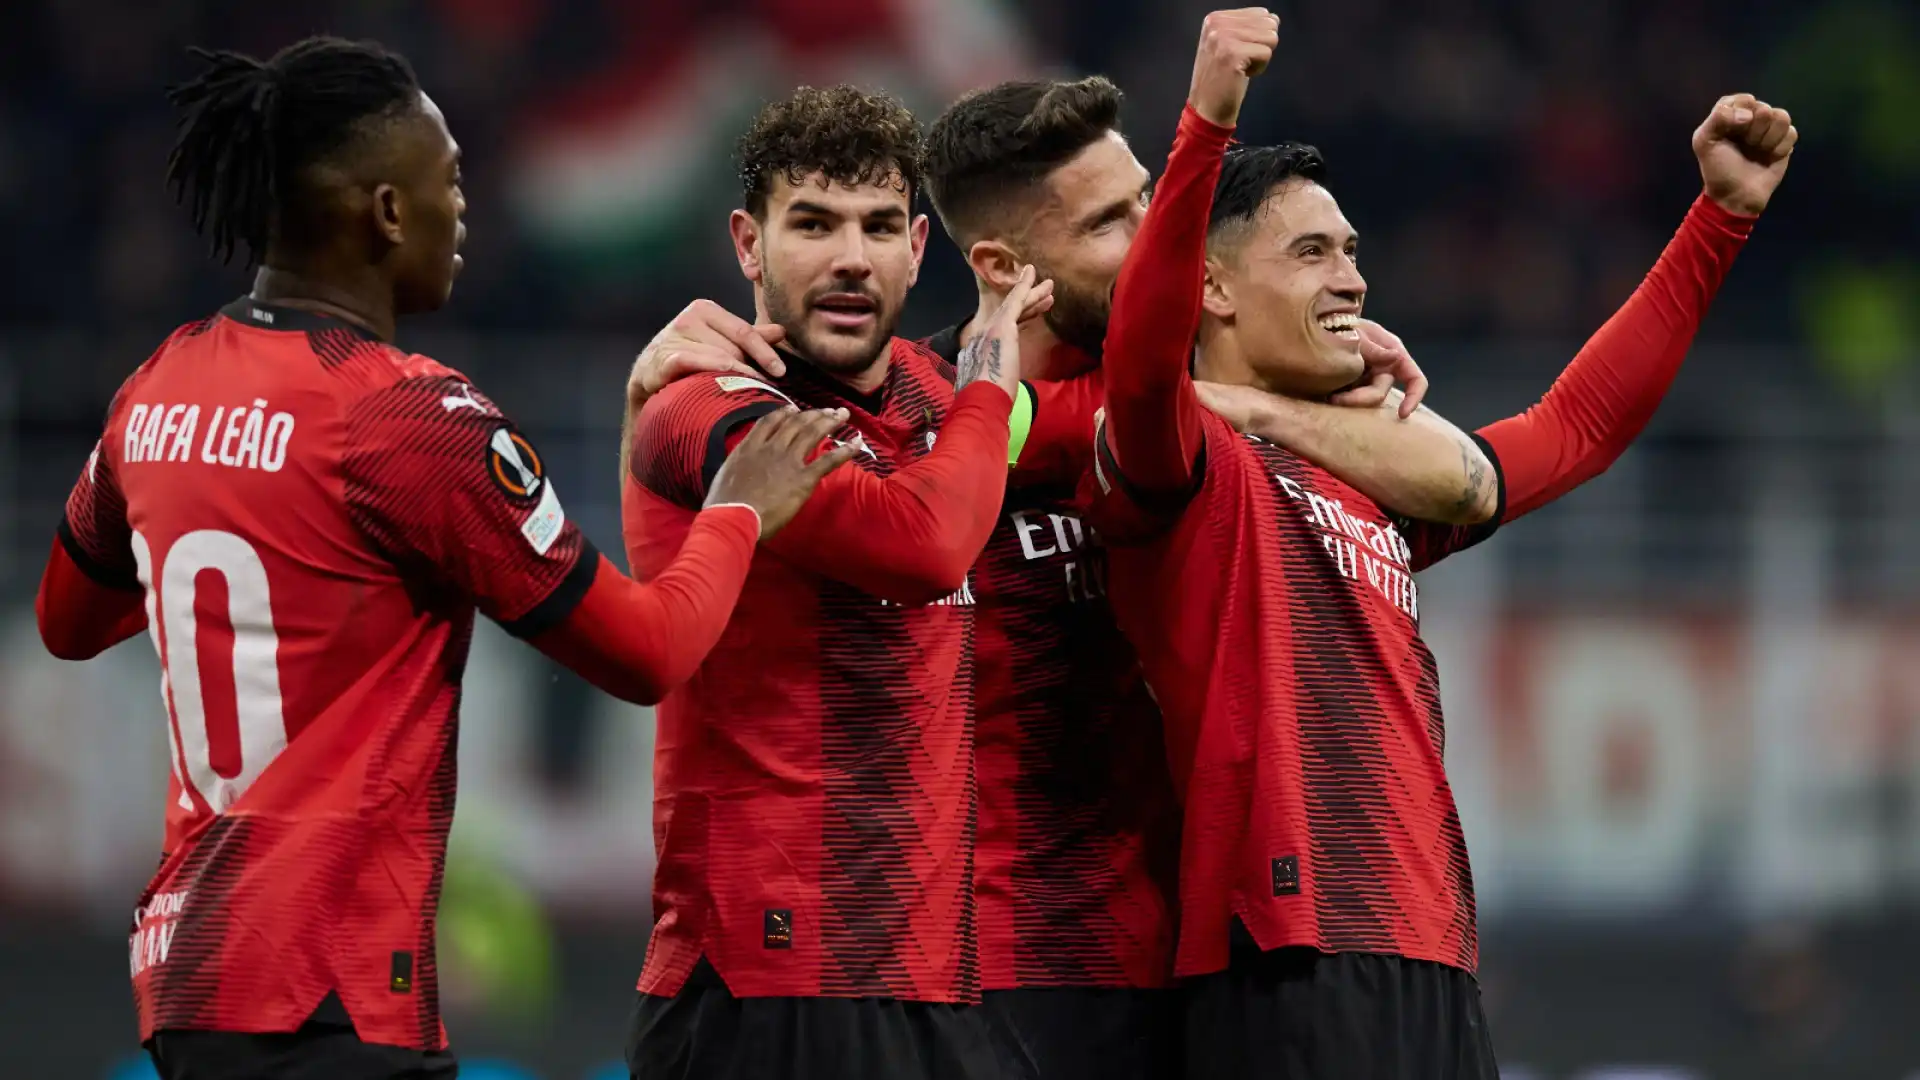 Il Milan metterà a segno un colpo anche in difesa: serve un centrale